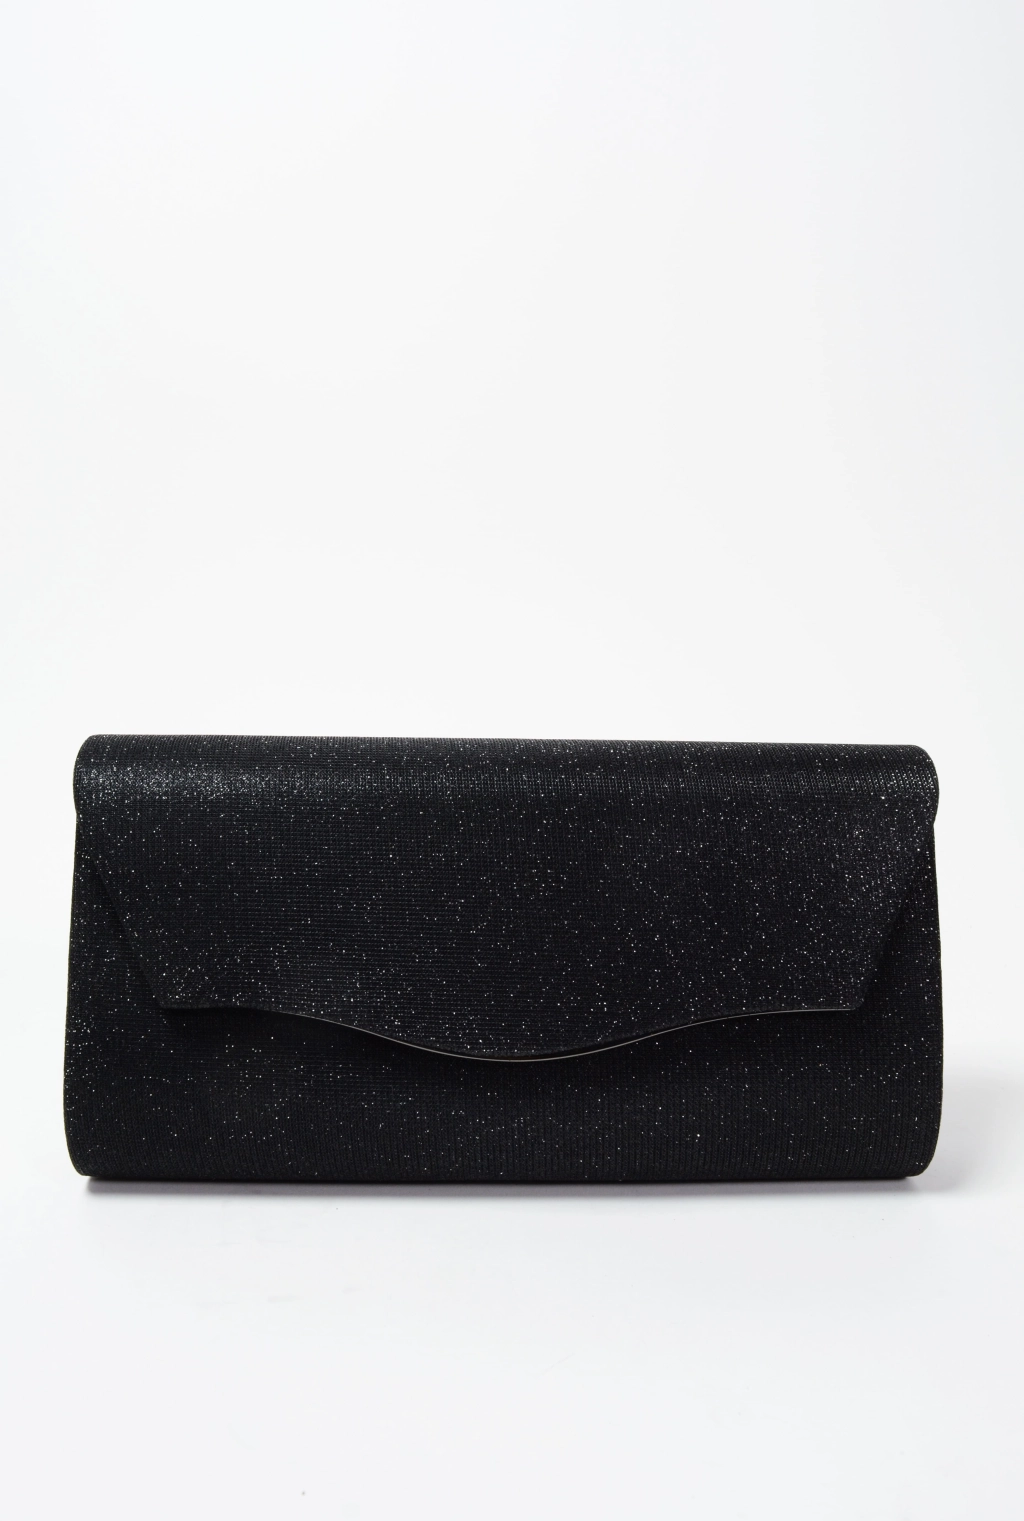 Официална дамска чанта в черен цвят